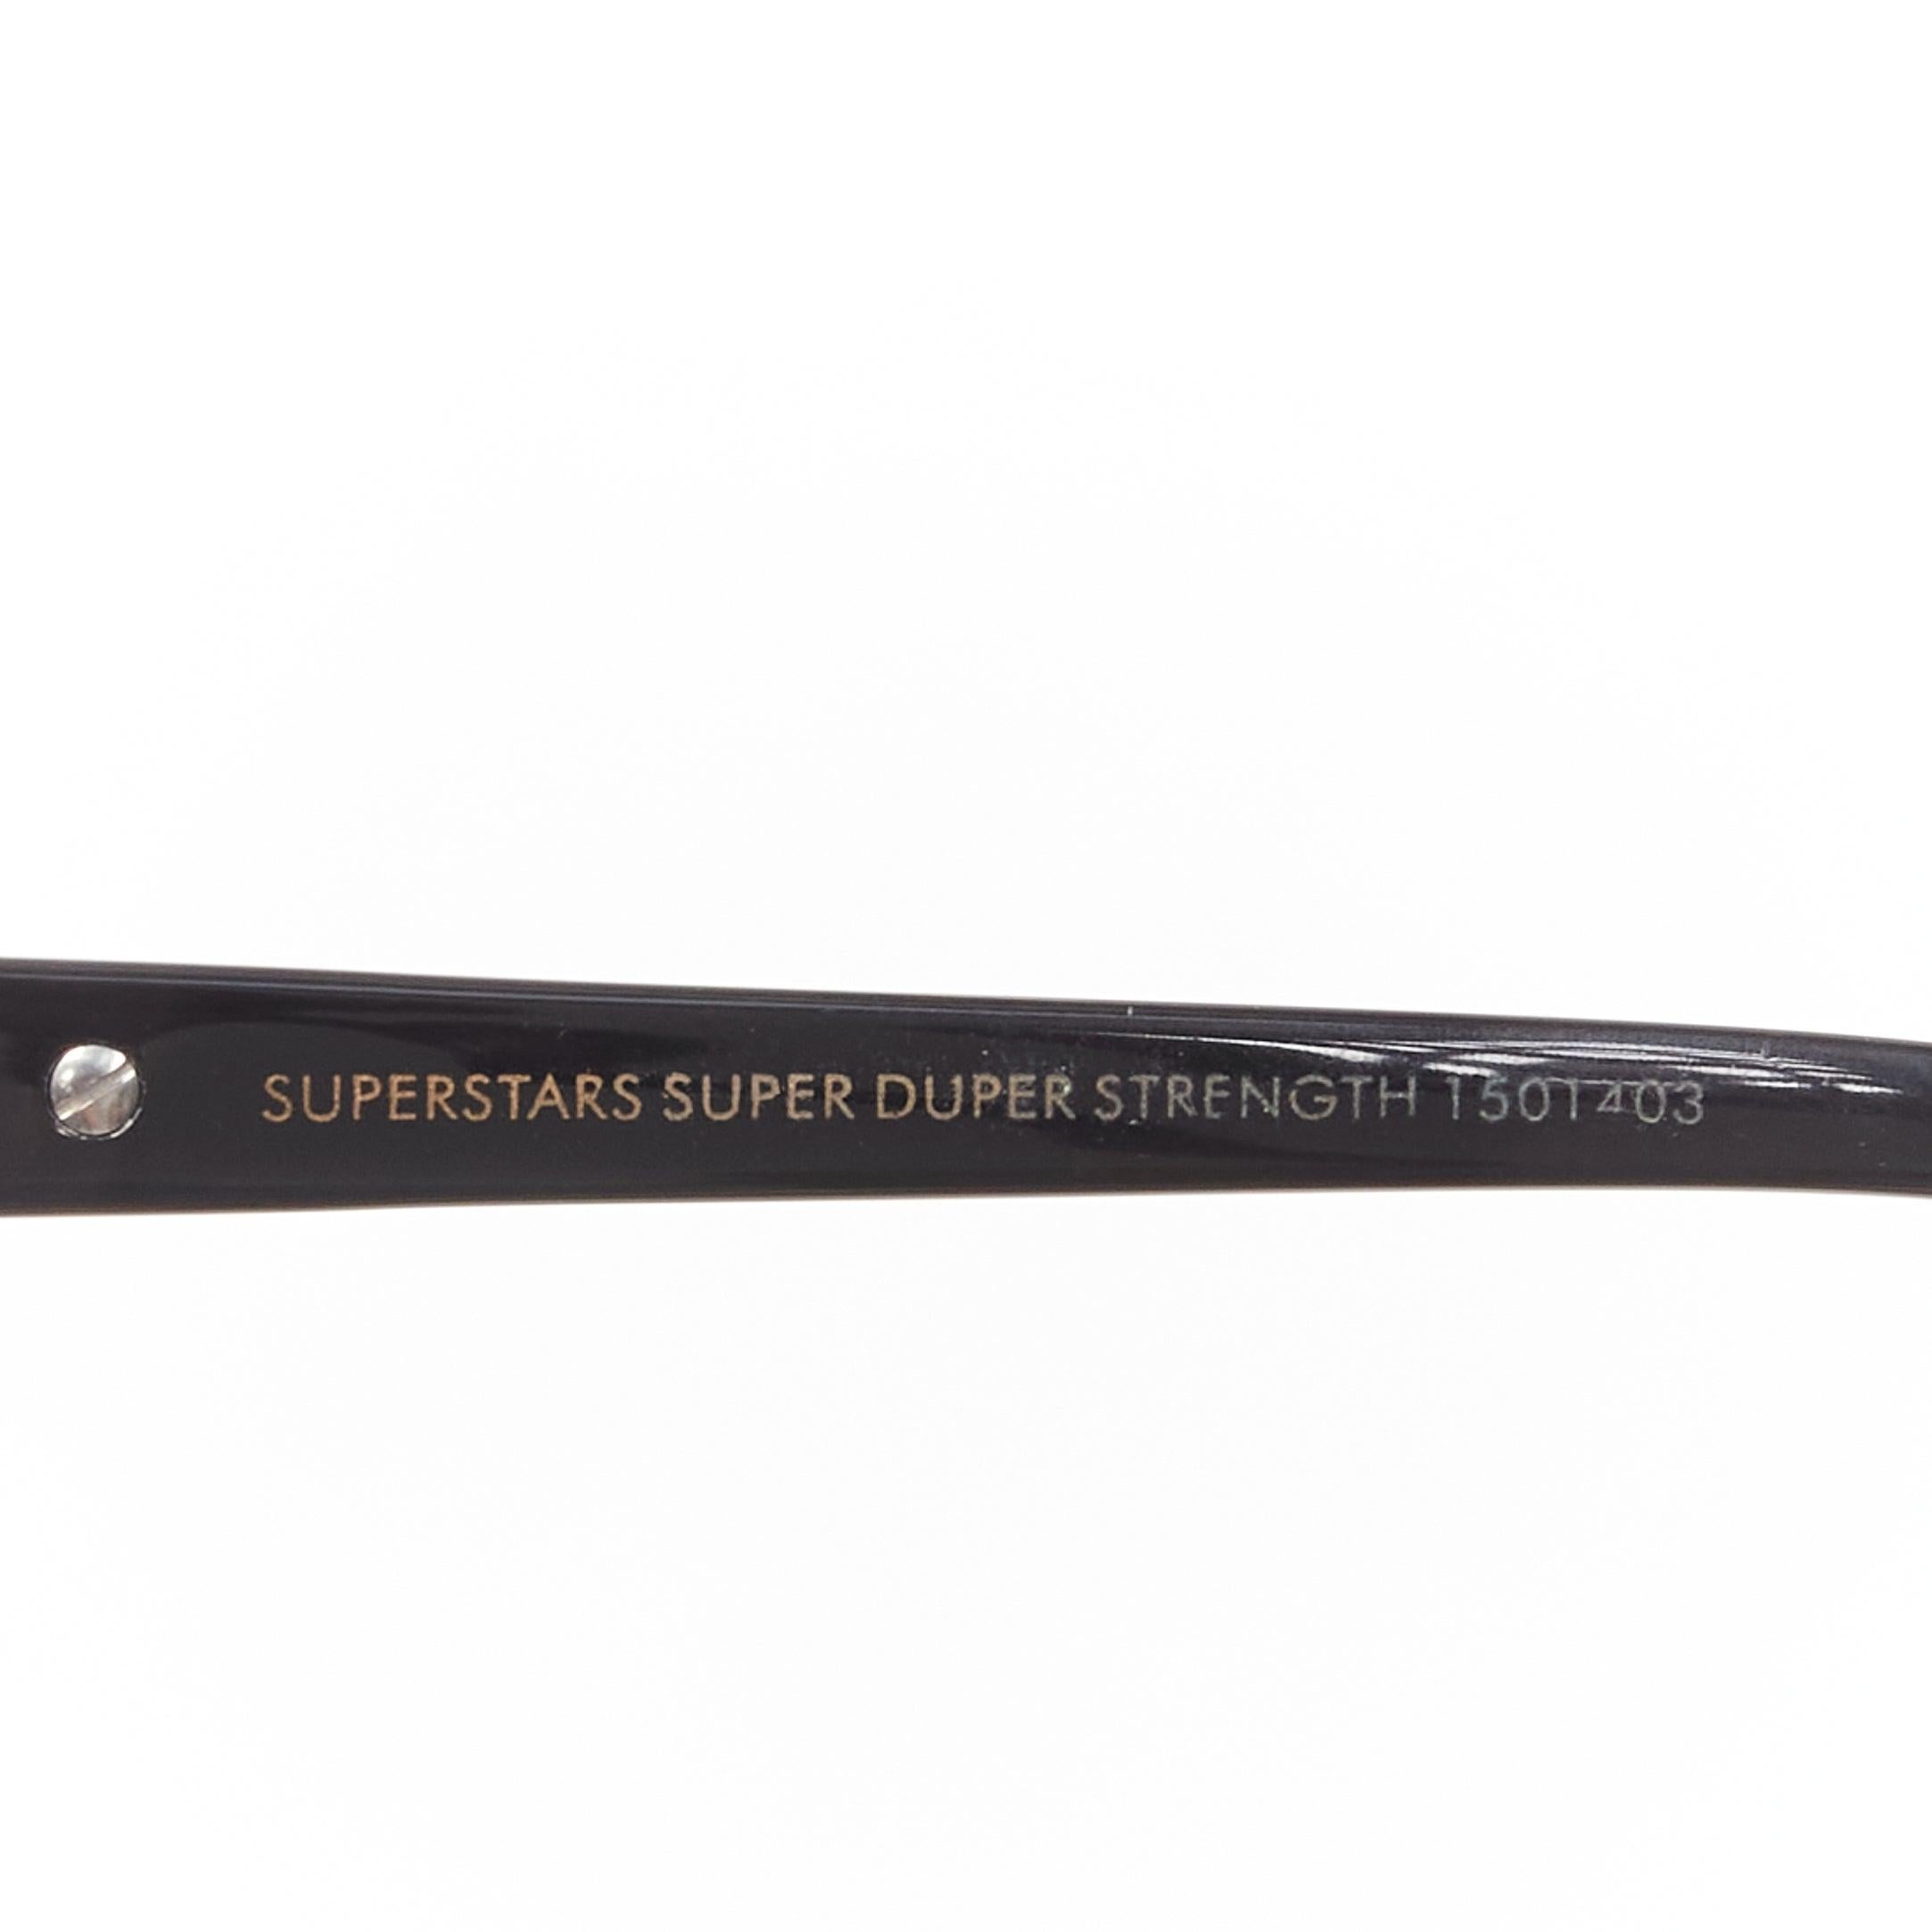 KAREN WALTER Superstars Super Duper Strength 150403 black mirrored sungalsses For Sale 1